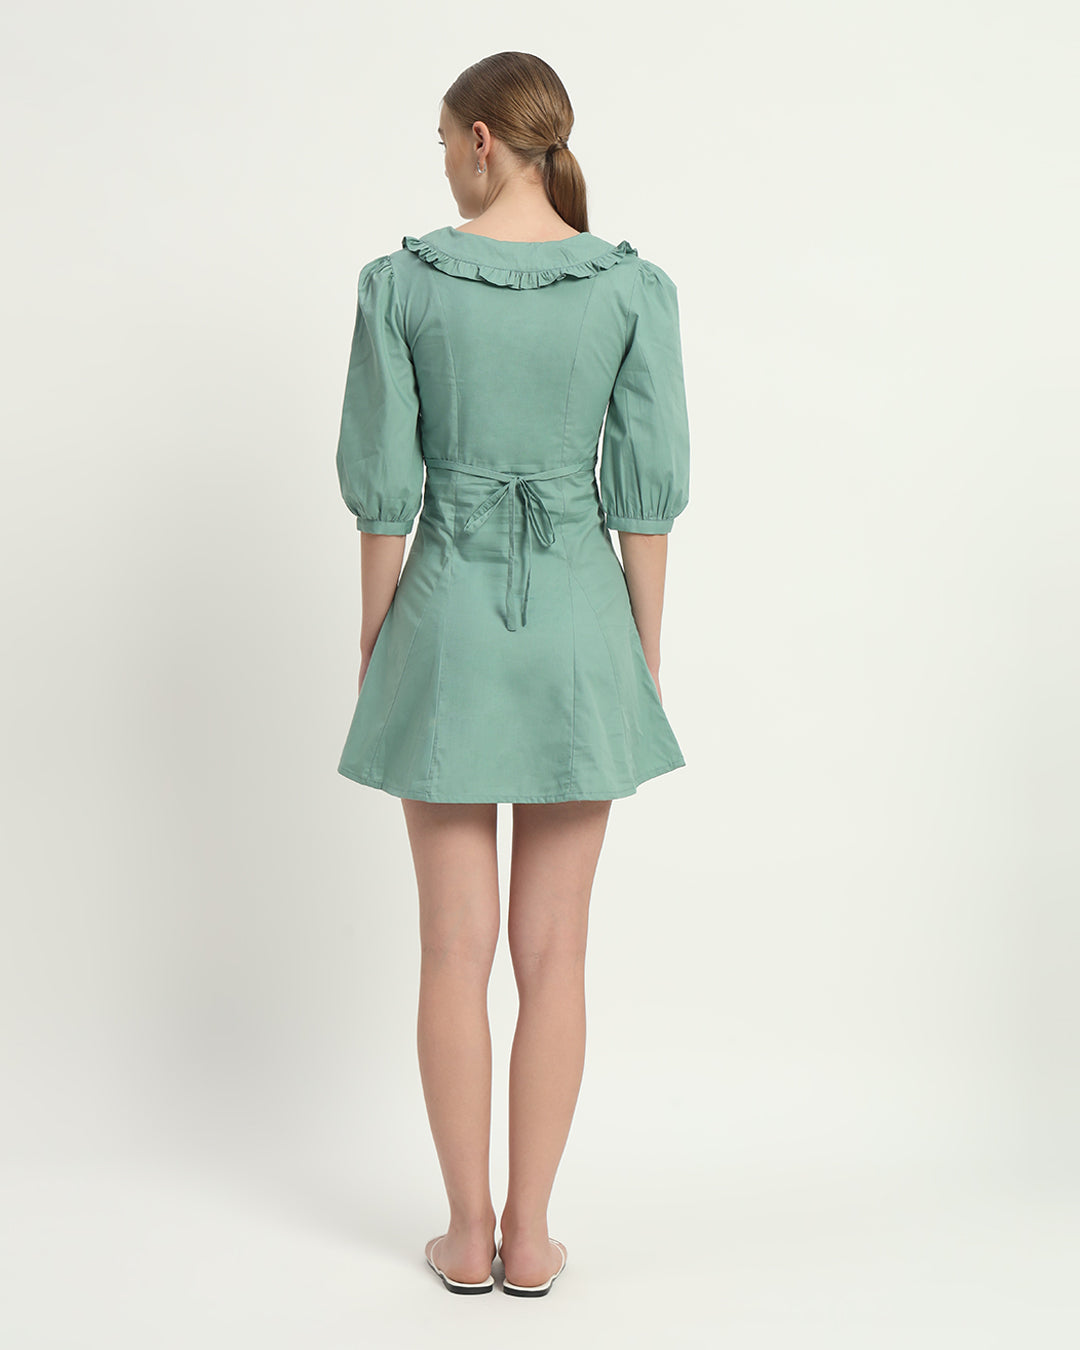 The Isabela Mint Cotton Dress